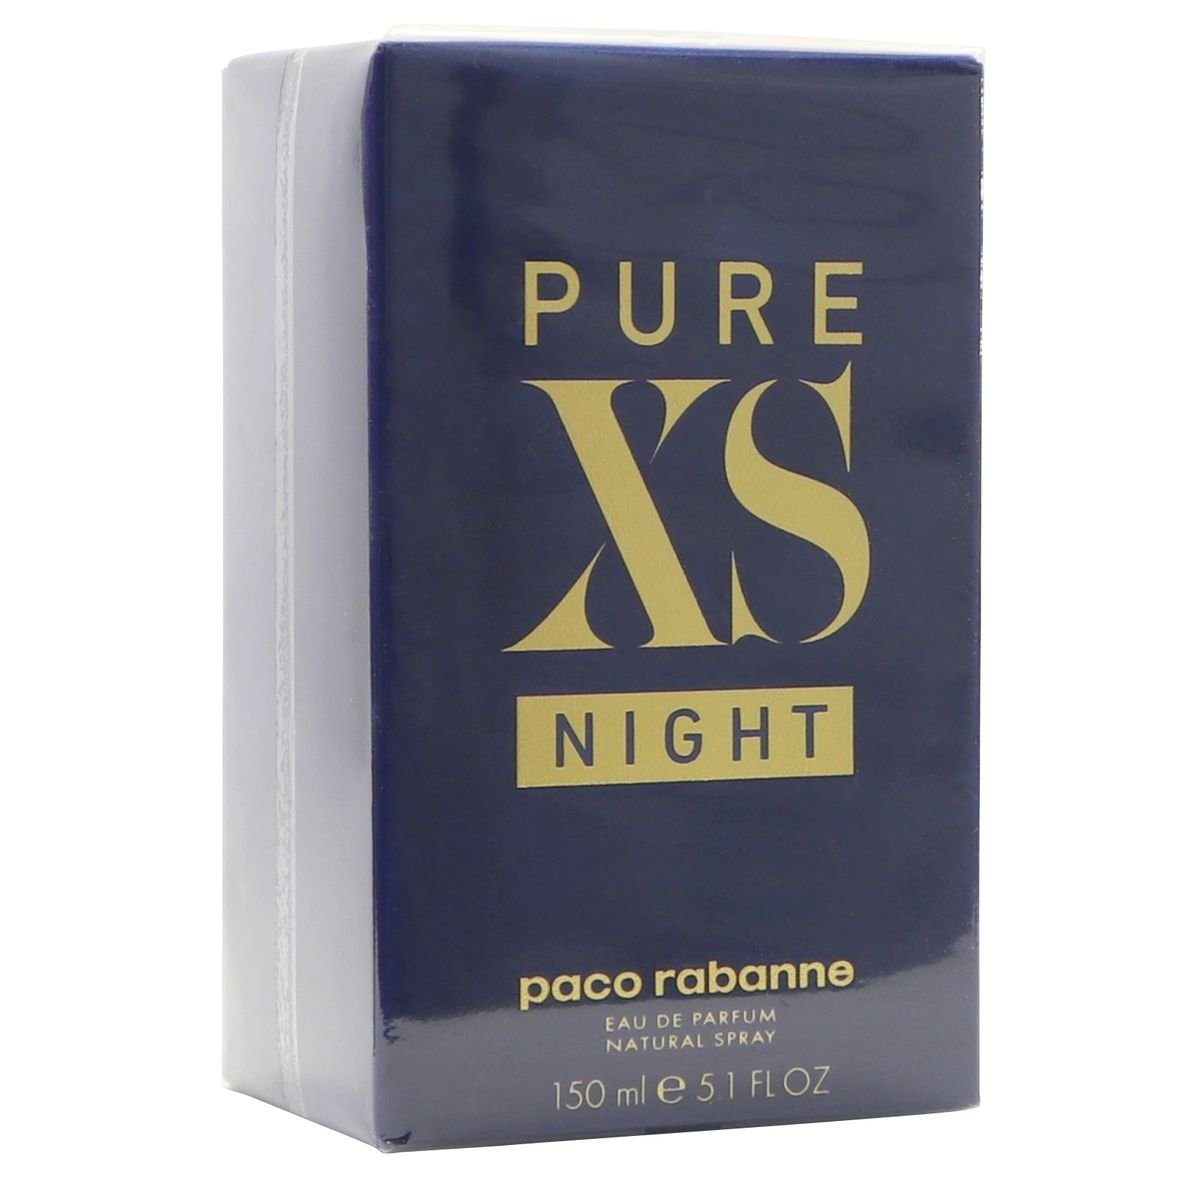 Pour paco de de Parfum Rabanne ml Pure Spray Night rabanne XS Lui Eau Parfum 150 Paco Eau